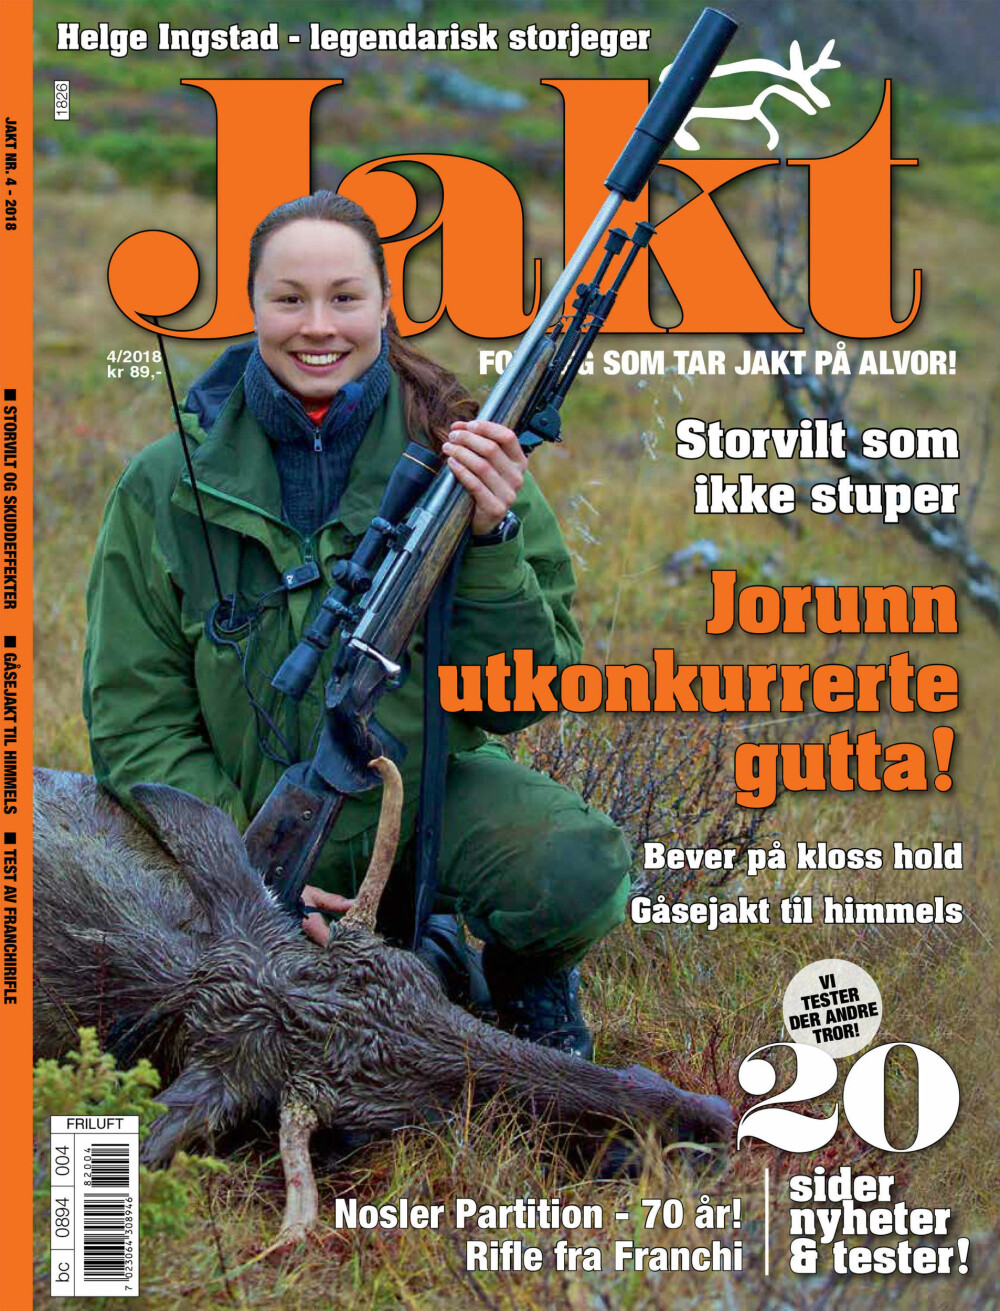 BLI ABONNENT: Artikkelen er publisert i samarbeid med magasinet Jakt. Klikk på bladet eller her for å abonnere (5 nummer + to kokkekniver for 198,-).